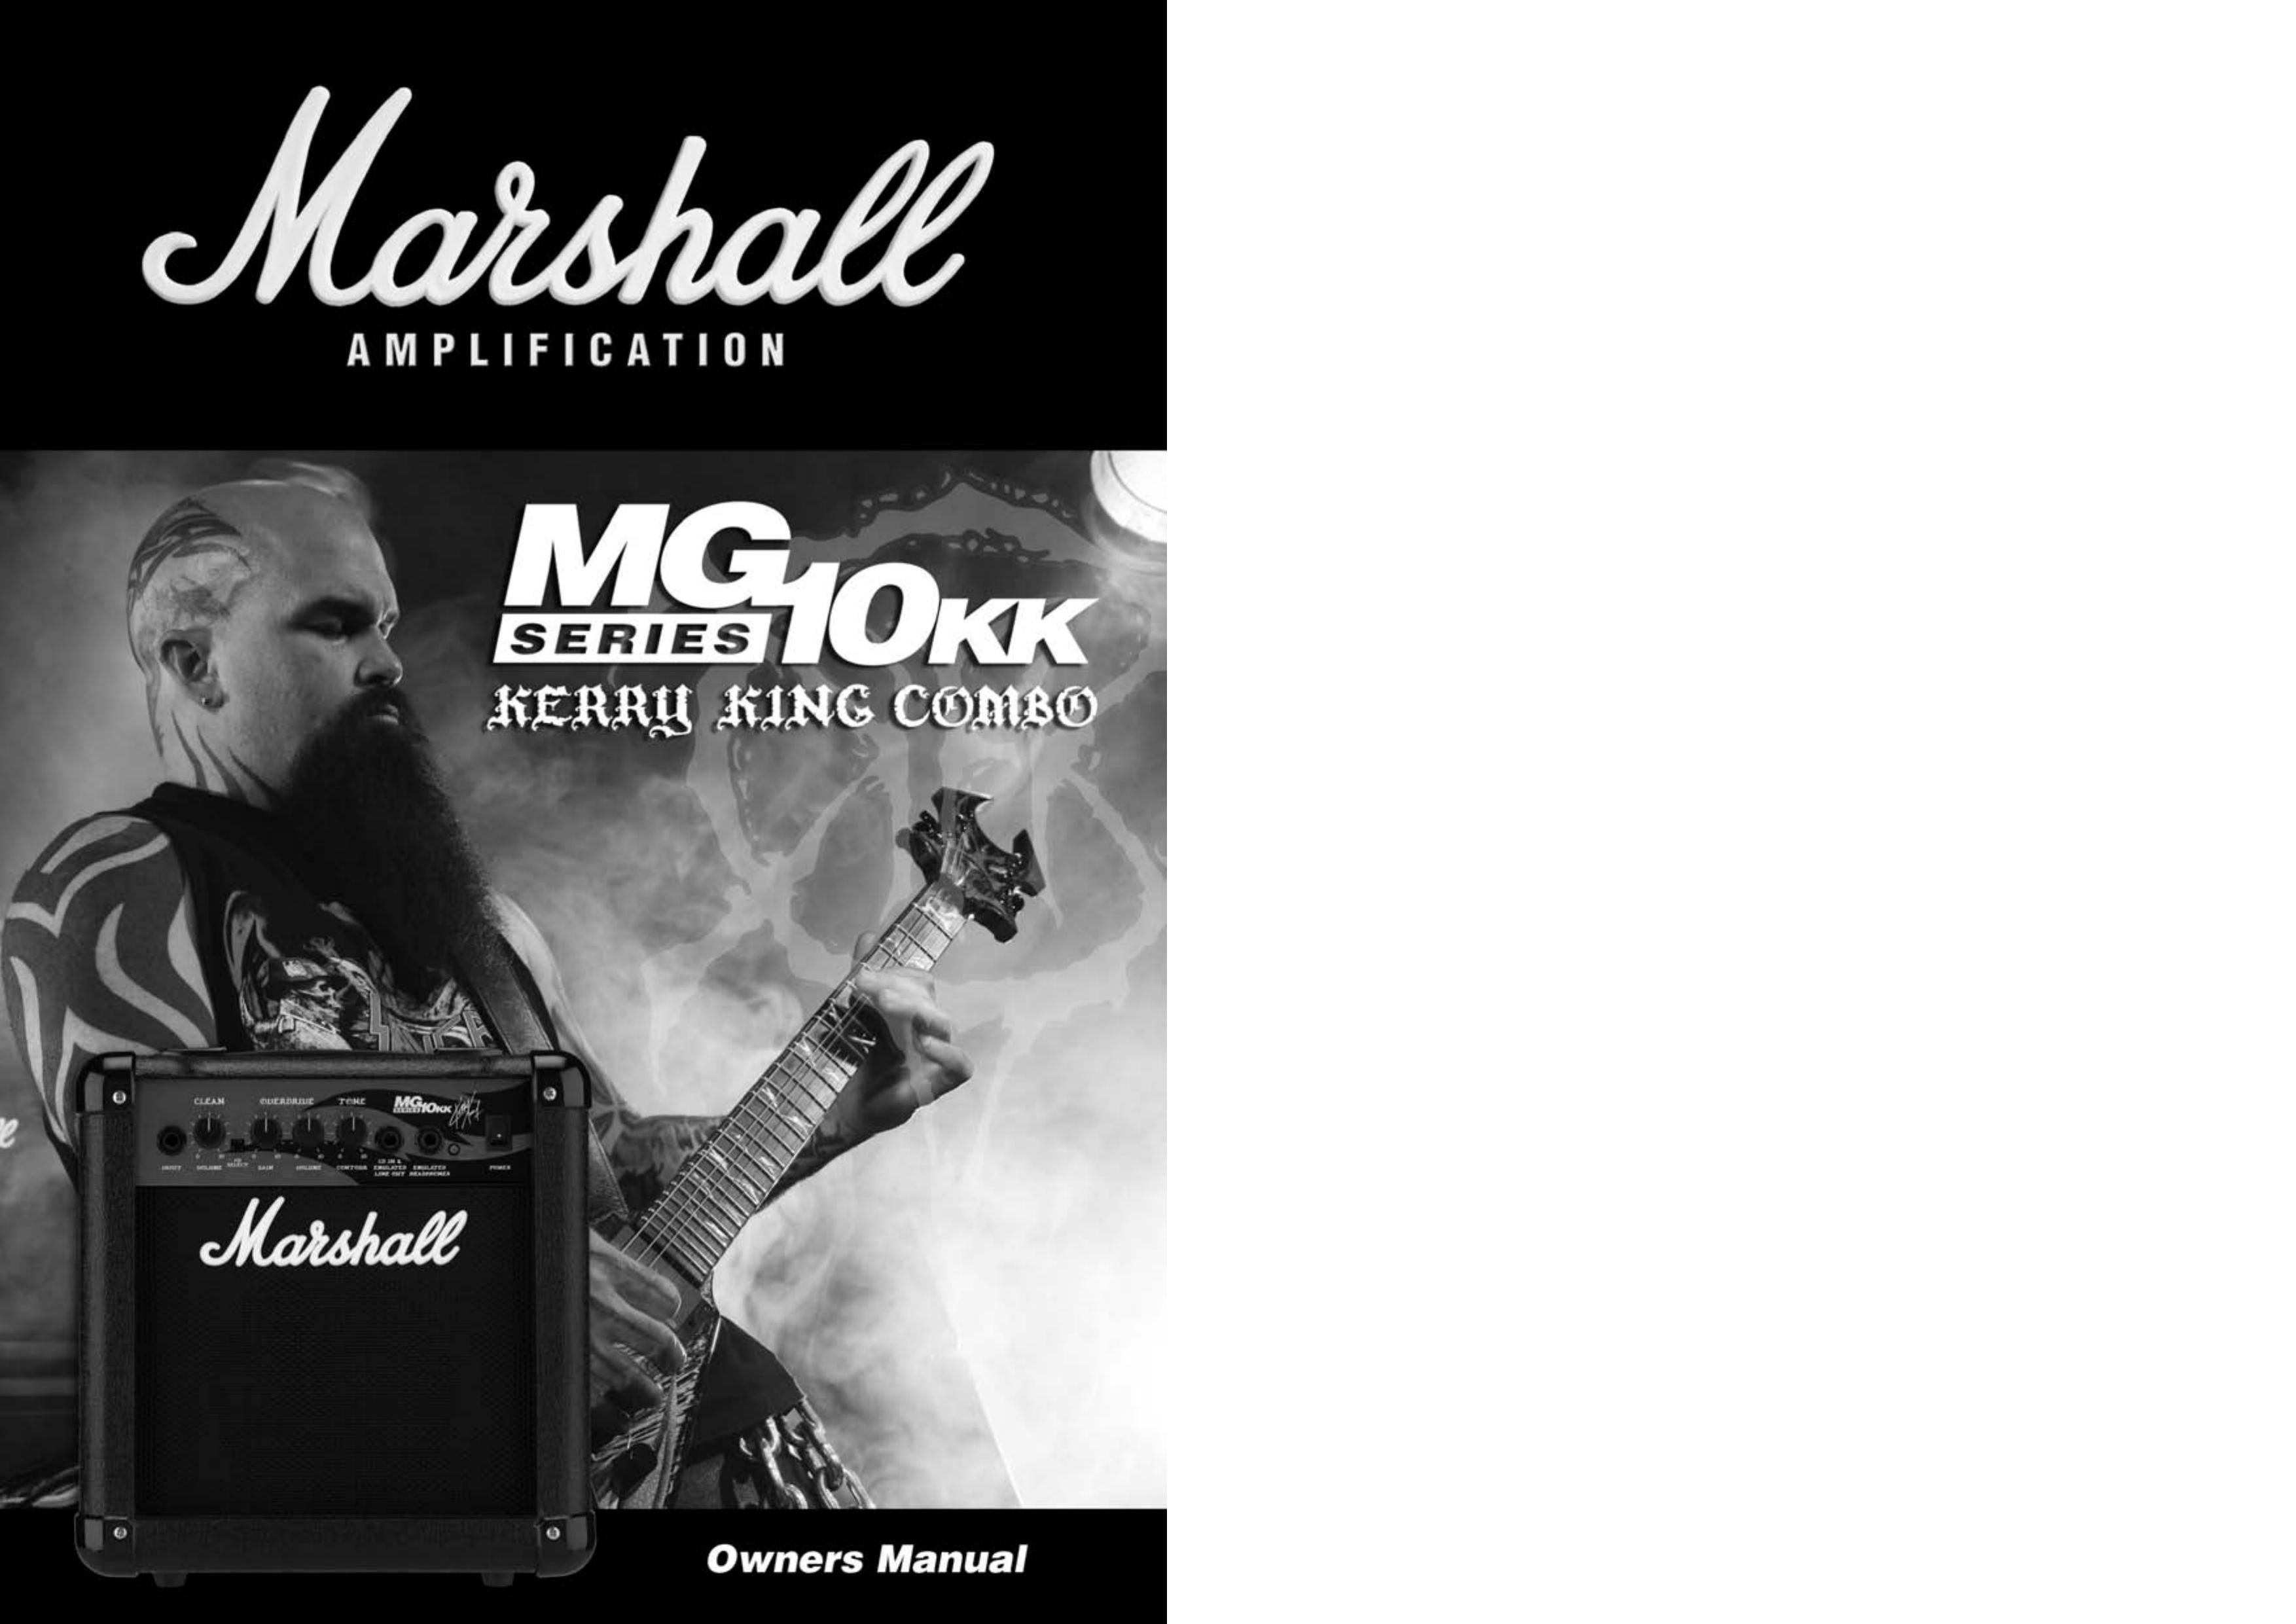 Marshall Amplification MG10KK Musical Instrument Amplifier User Manual